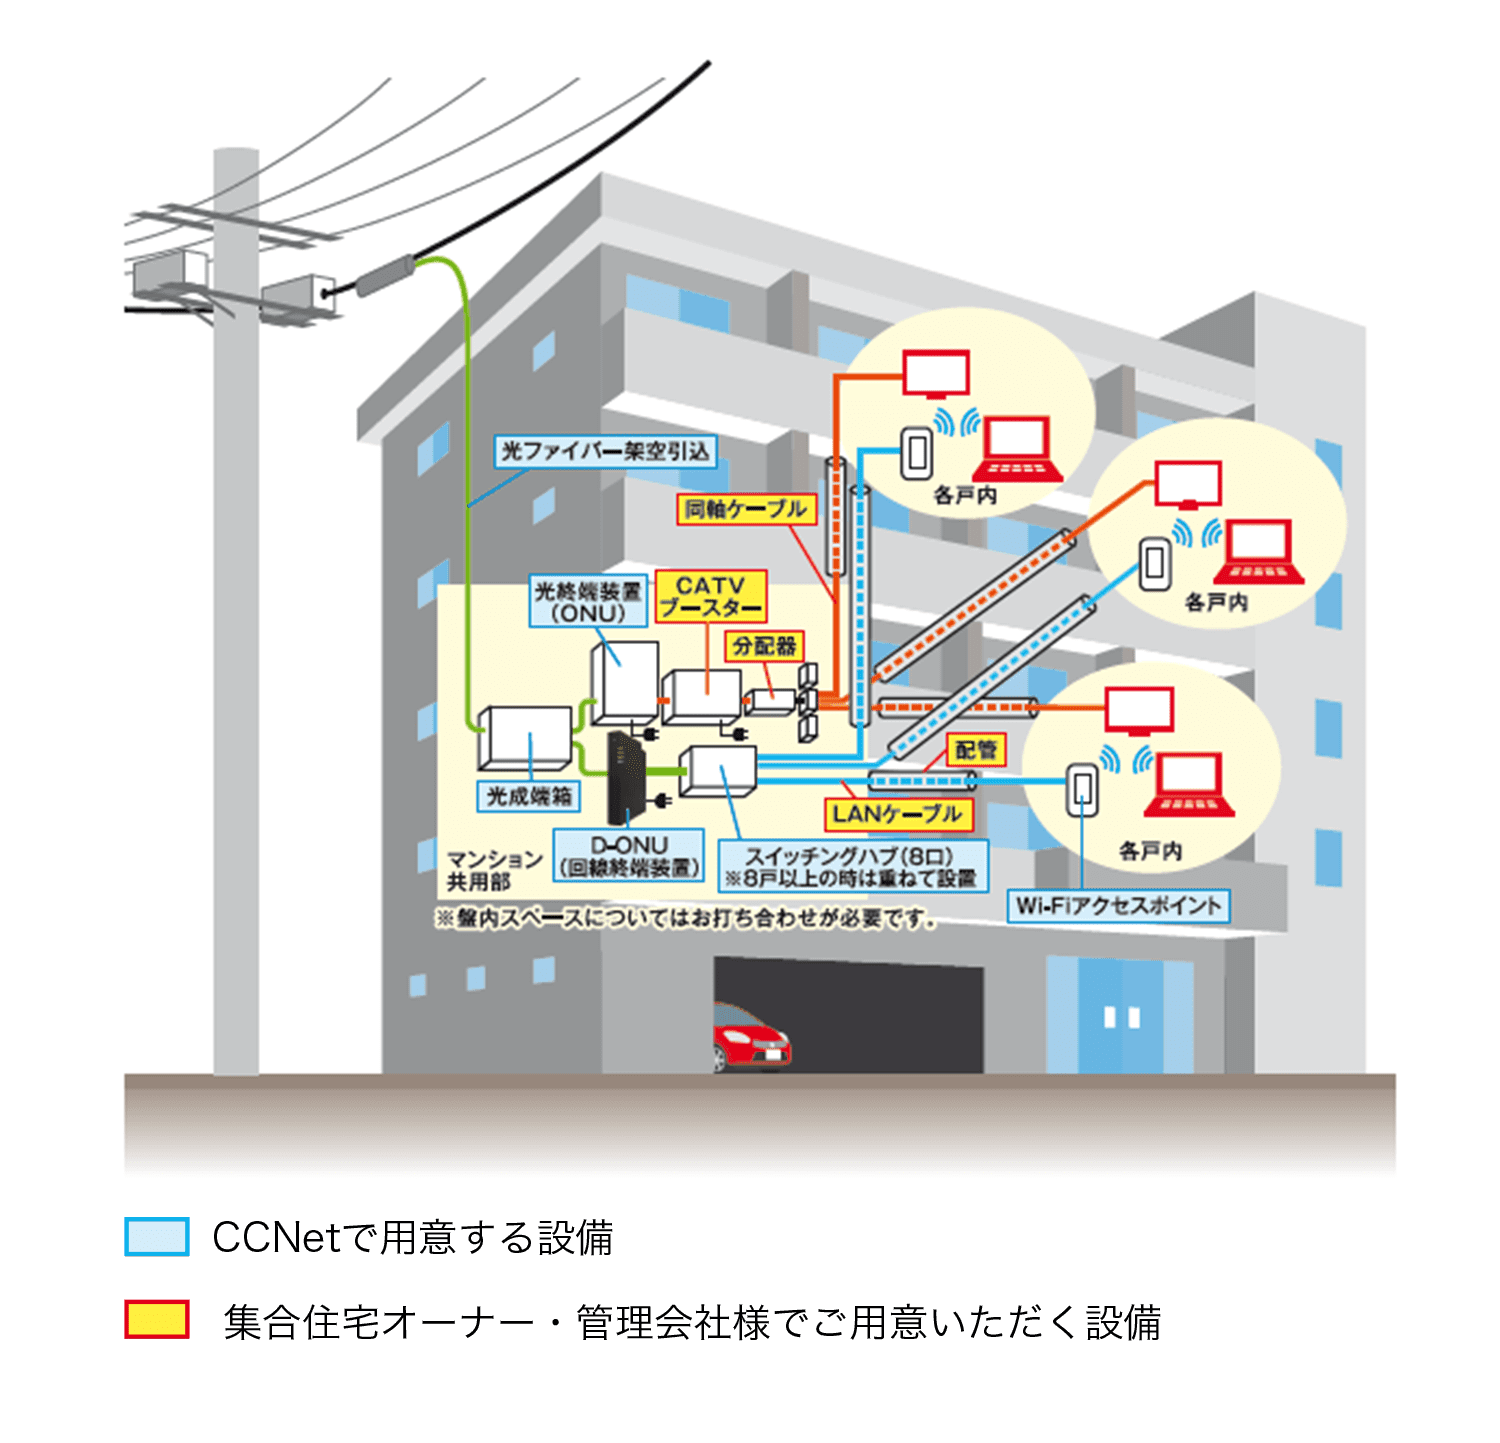 CCNetで用意する設備：光ファイバー架空引込、光終端装置（ONU）、光成端箱、D-ONU（回線終端装置）、スイッチングハブ（8口）※8戸以上の時は重ねて設置、Wi-Fiアクセスポイント 集合住宅オーナー・管理会社様でご用意いただく設備：CATVブースター、分配器、同軸ケーブル、LANケーブル、配管